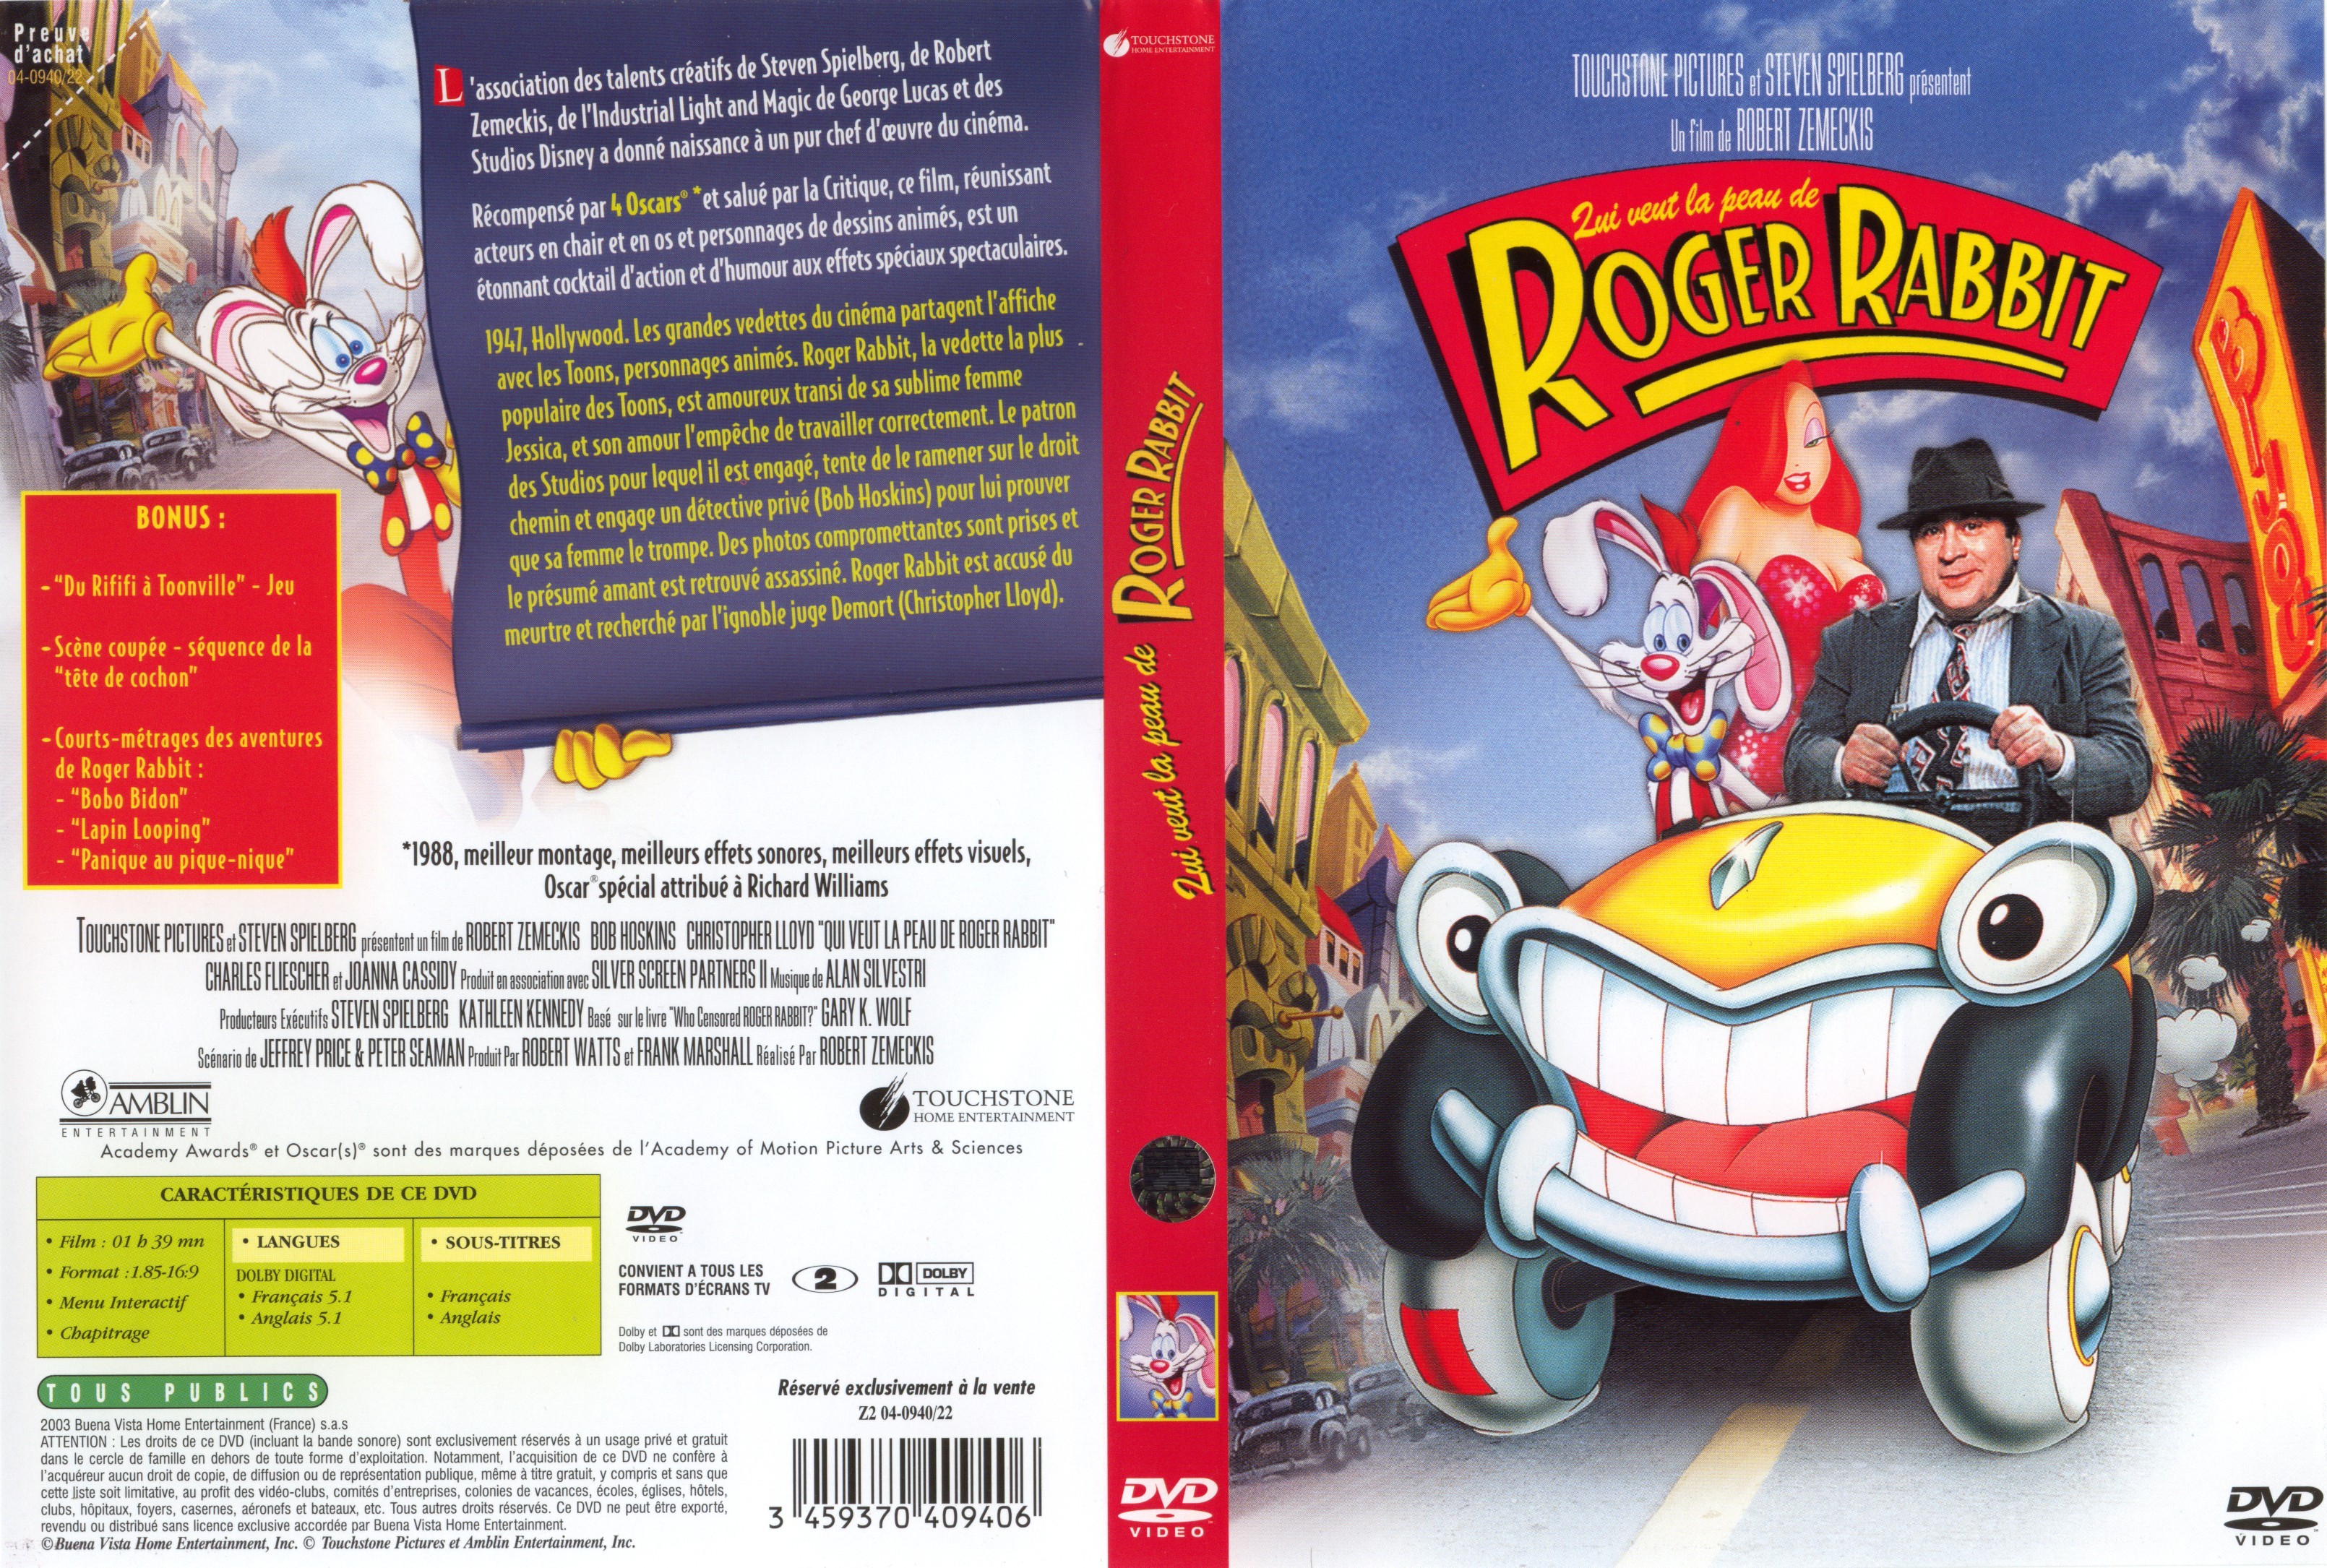 Jaquette DVD Qui veut la peau de Roger Rabbit v2